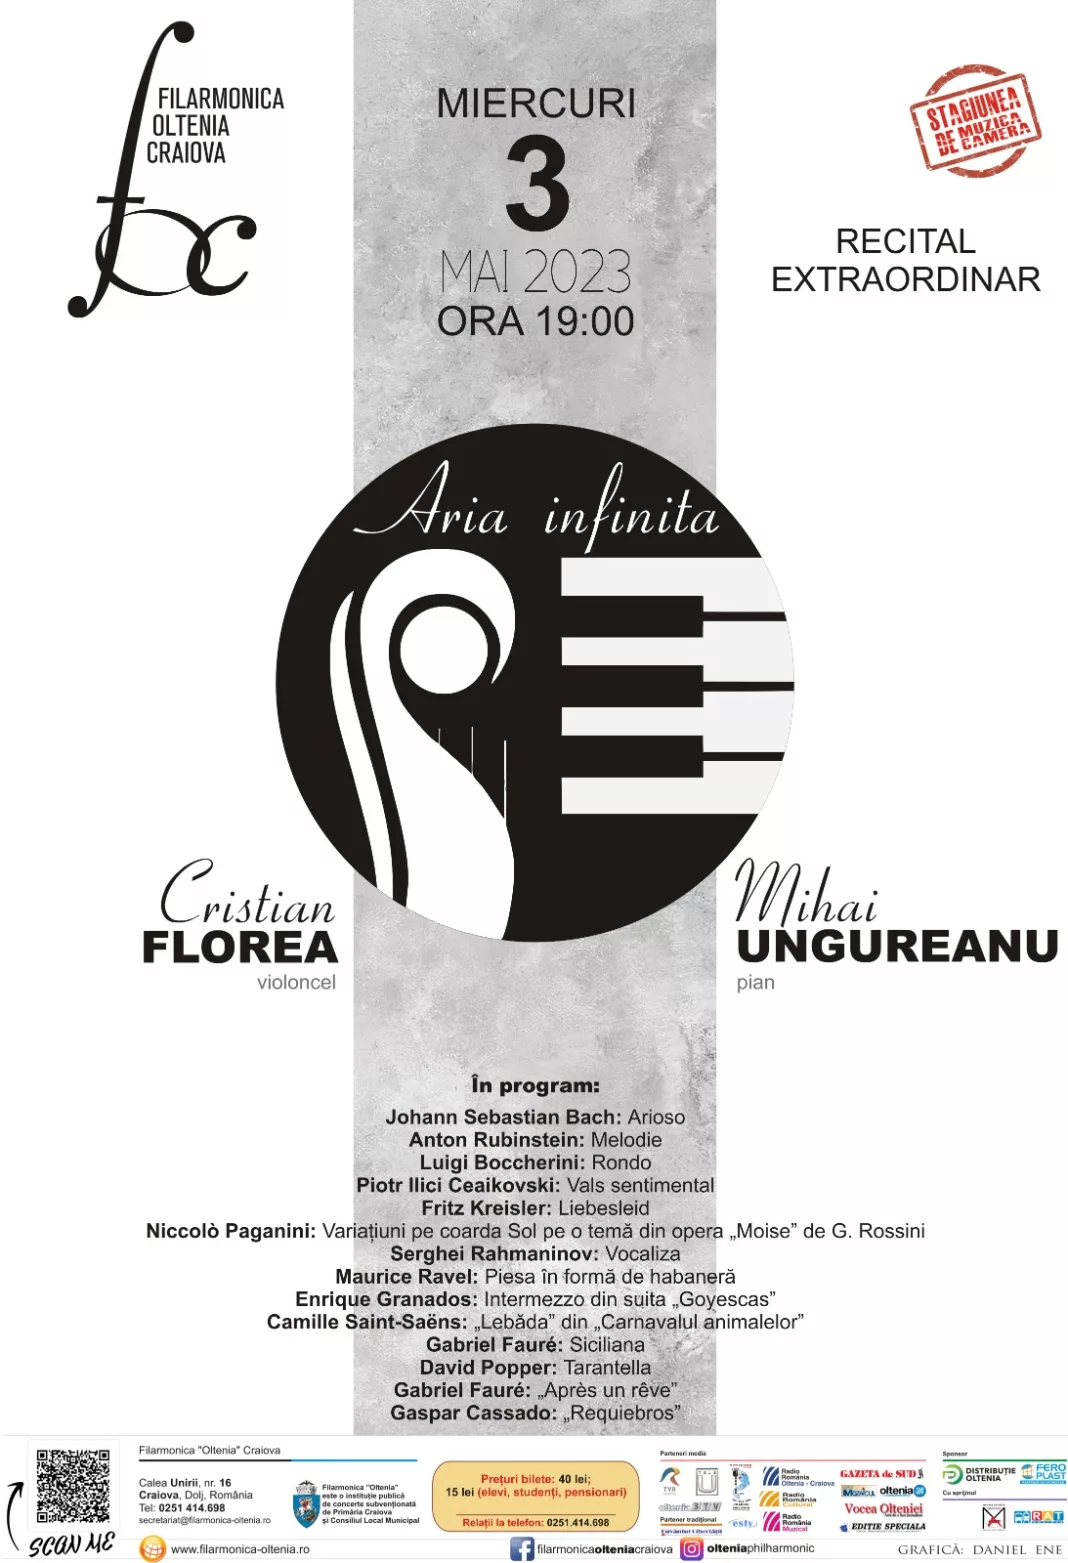 Recital Extraordinar Cristian Florea şi Mihai Ungureanu la Filarmonica Oltenia